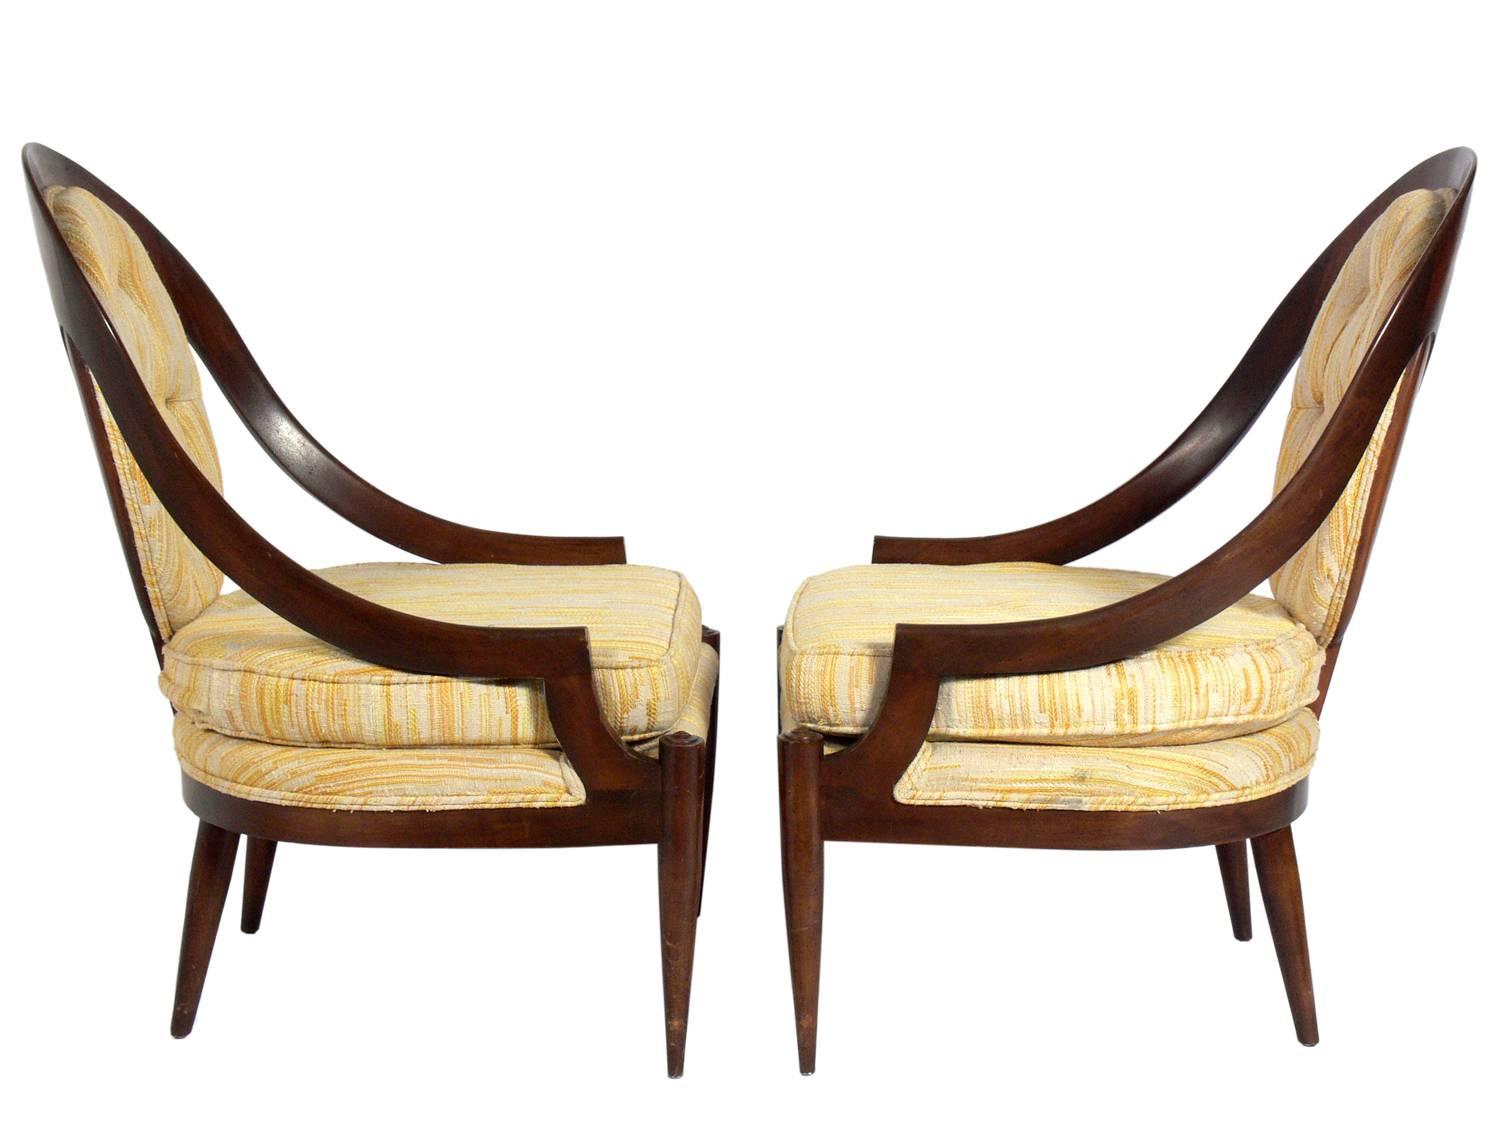 Paire de chaises longues en forme de cuillère, américaines, vers les années 1950. Ils devront être retapissés. Le prix indiqué ci-dessous comprend le retapissage dans votre tissu.